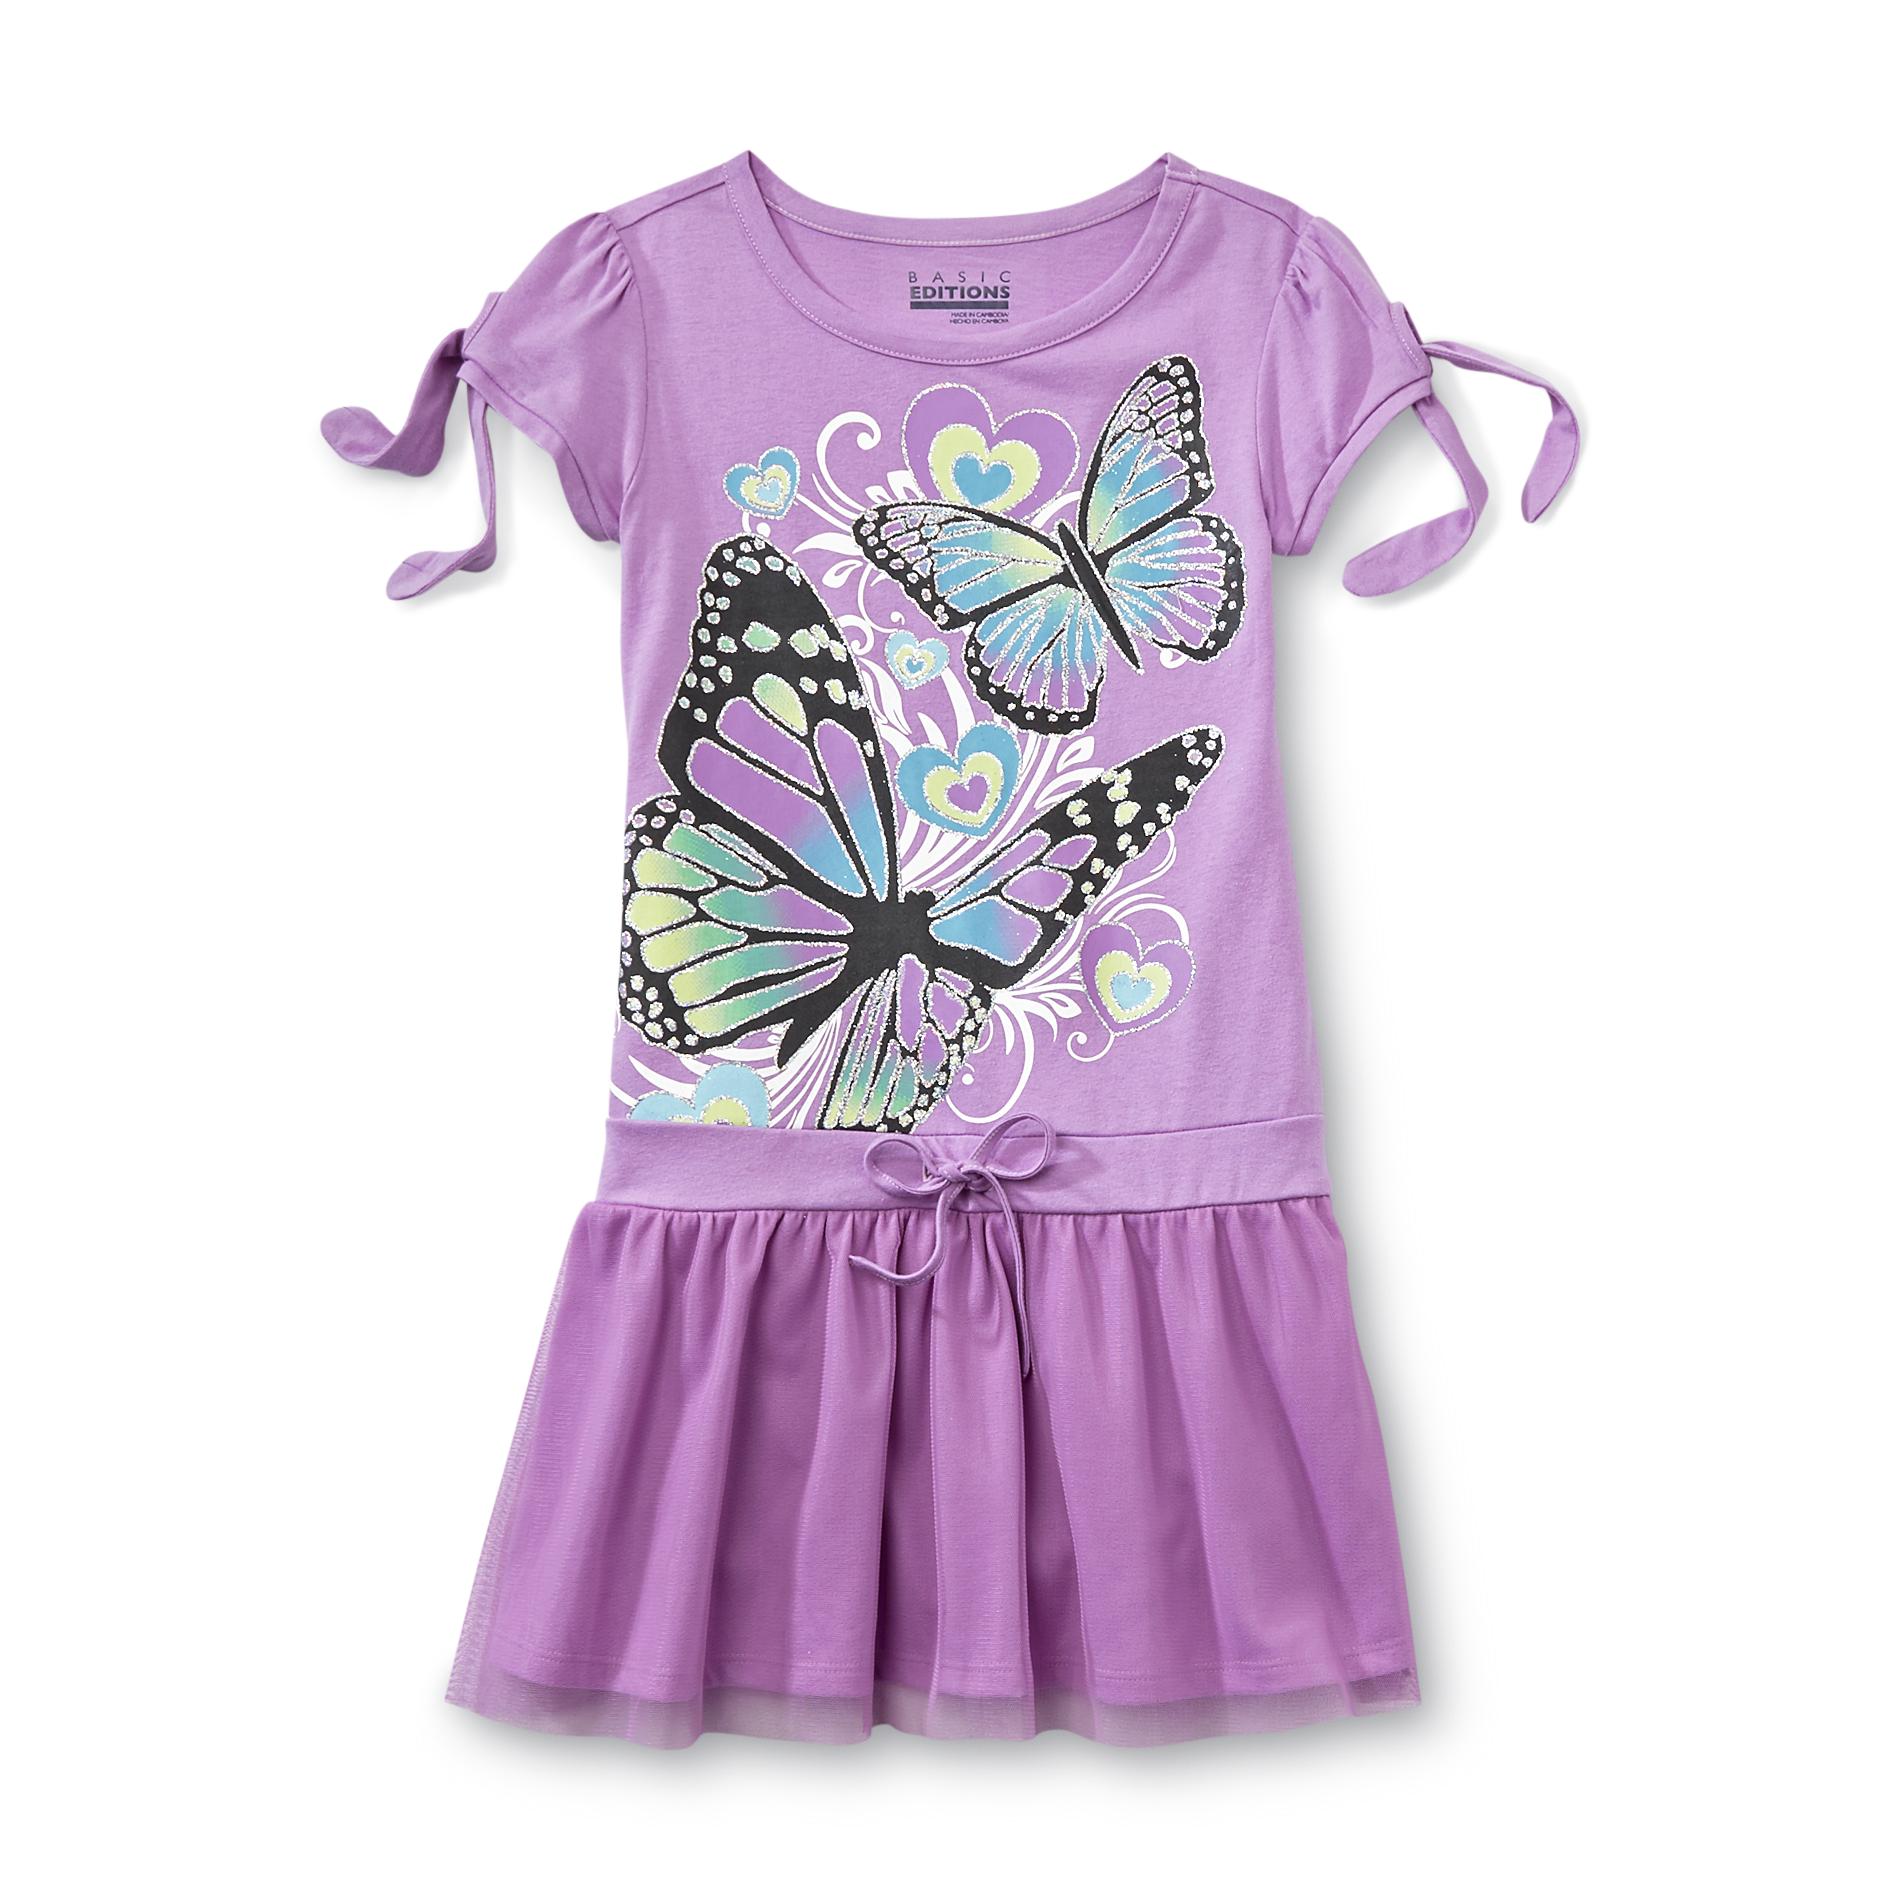 Basic Editions Girl's Drop-Waist Dress - Butterflies & Hearts